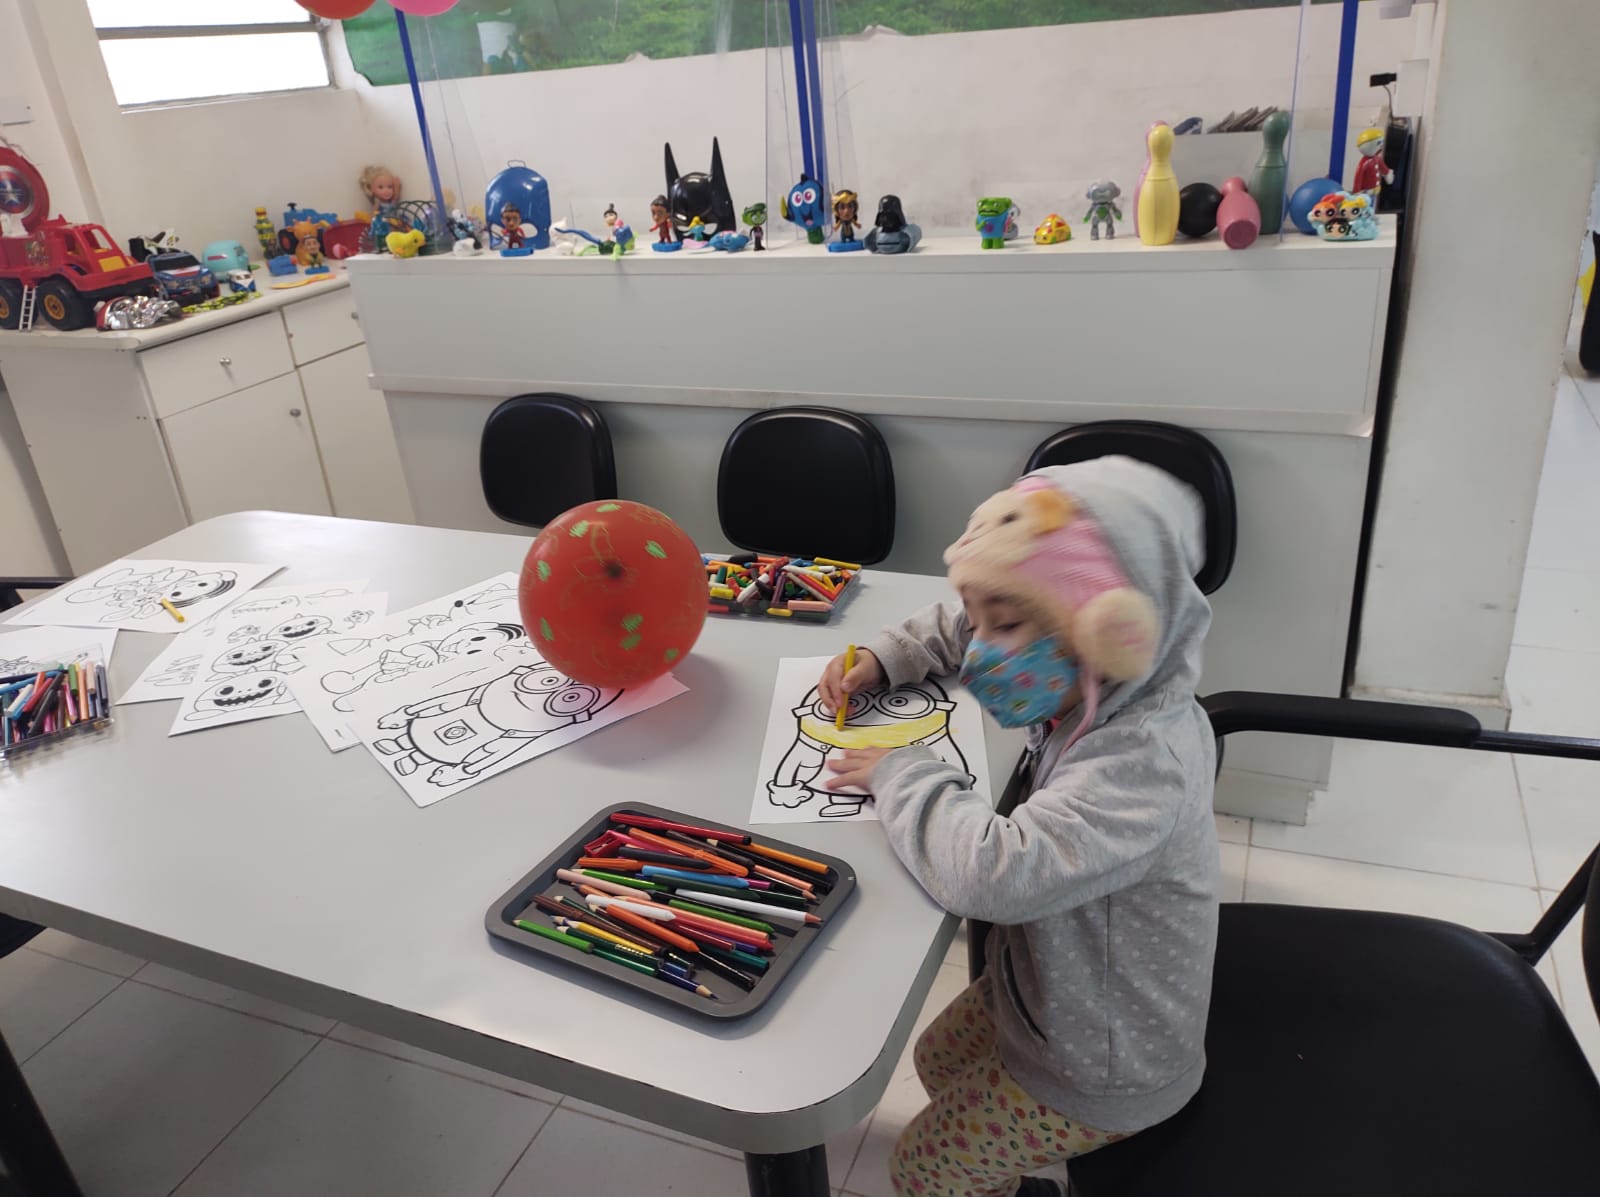 Foto mostra uma criança usando touca e máscara; ela está sentada junto a uma mesa onde estão várias folhas com desenhos além de lápis de cor, ela colore um dos desenhos